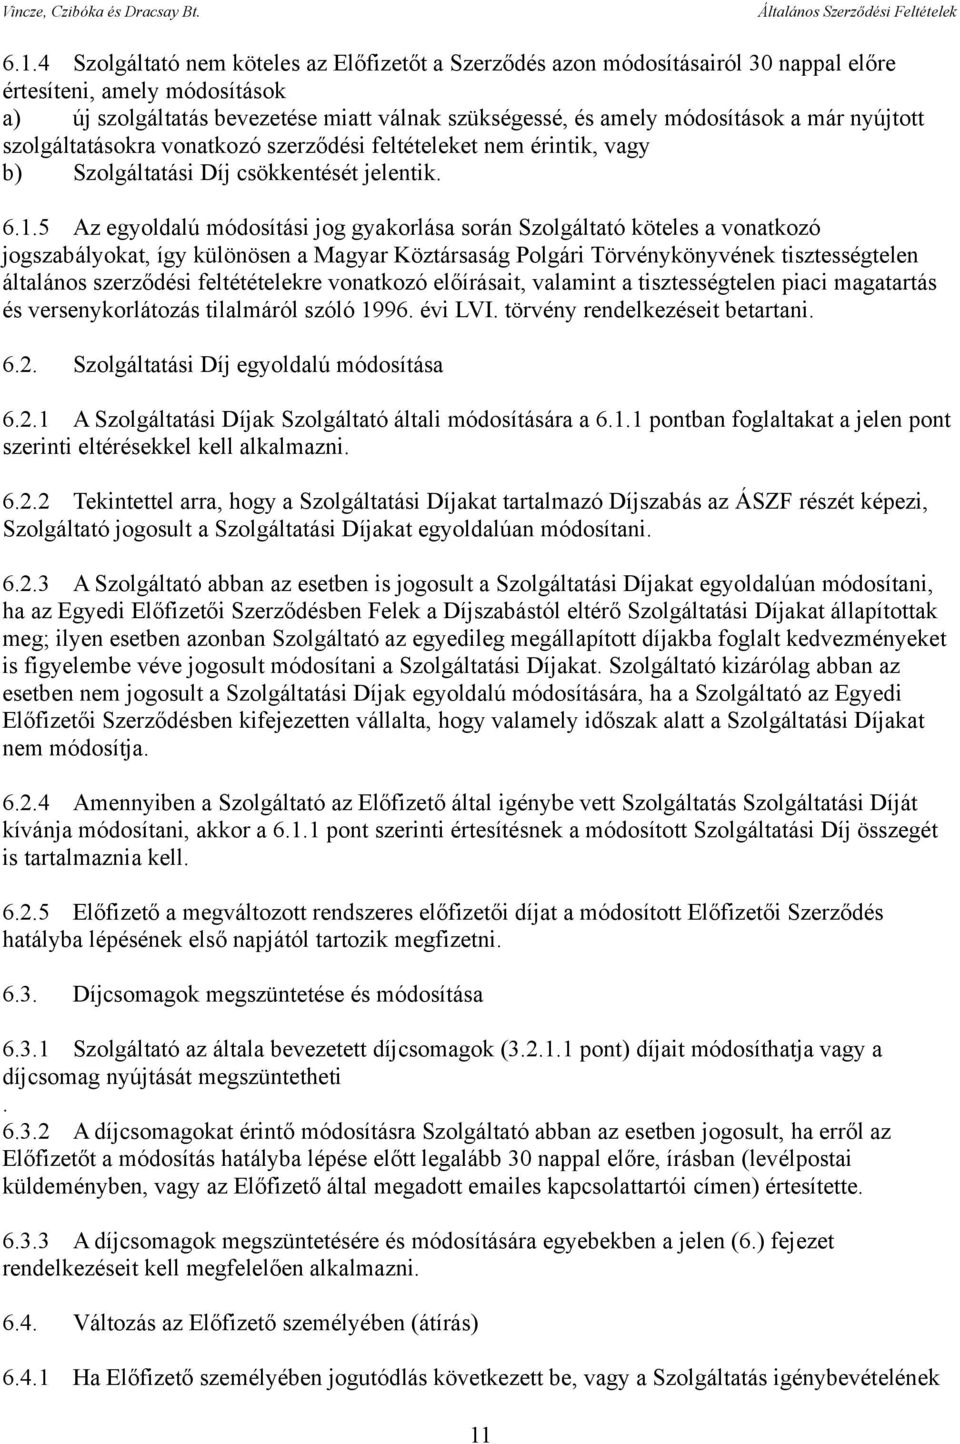 5 Az egyoldalú módosítási jog gyakorlása során Szolgáltató köteles a vonatkozó jogszabályokat, így különösen a Magyar Köztársaság Polgári Törvénykönyvének tisztességtelen általános szerződési